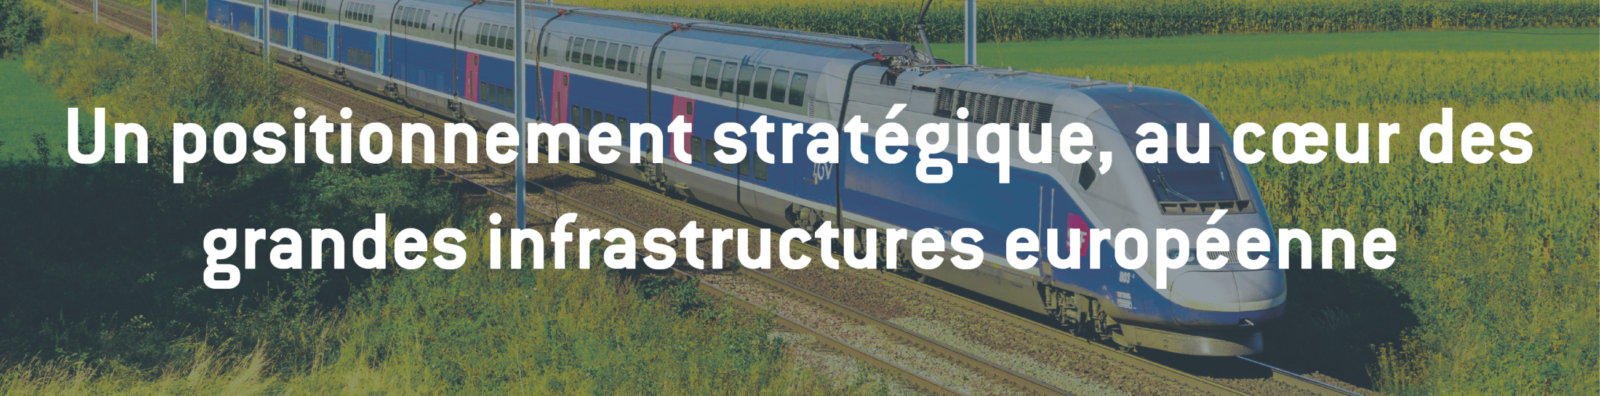 Un positionnement stratégique au cœur des infrastructures européennes